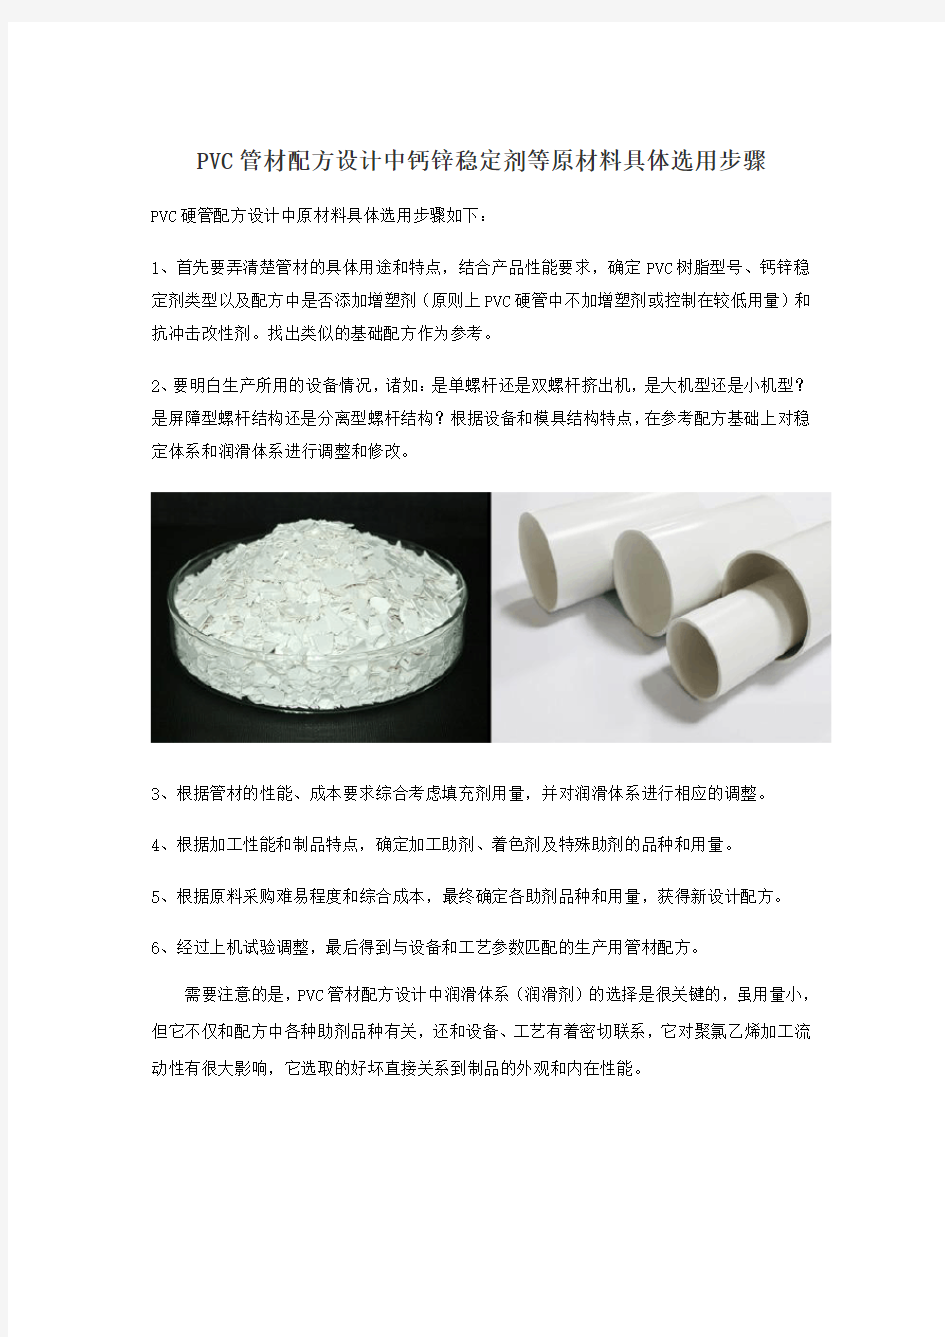 PVC管材配方设计中钙锌稳定剂等原材料具体选用步骤